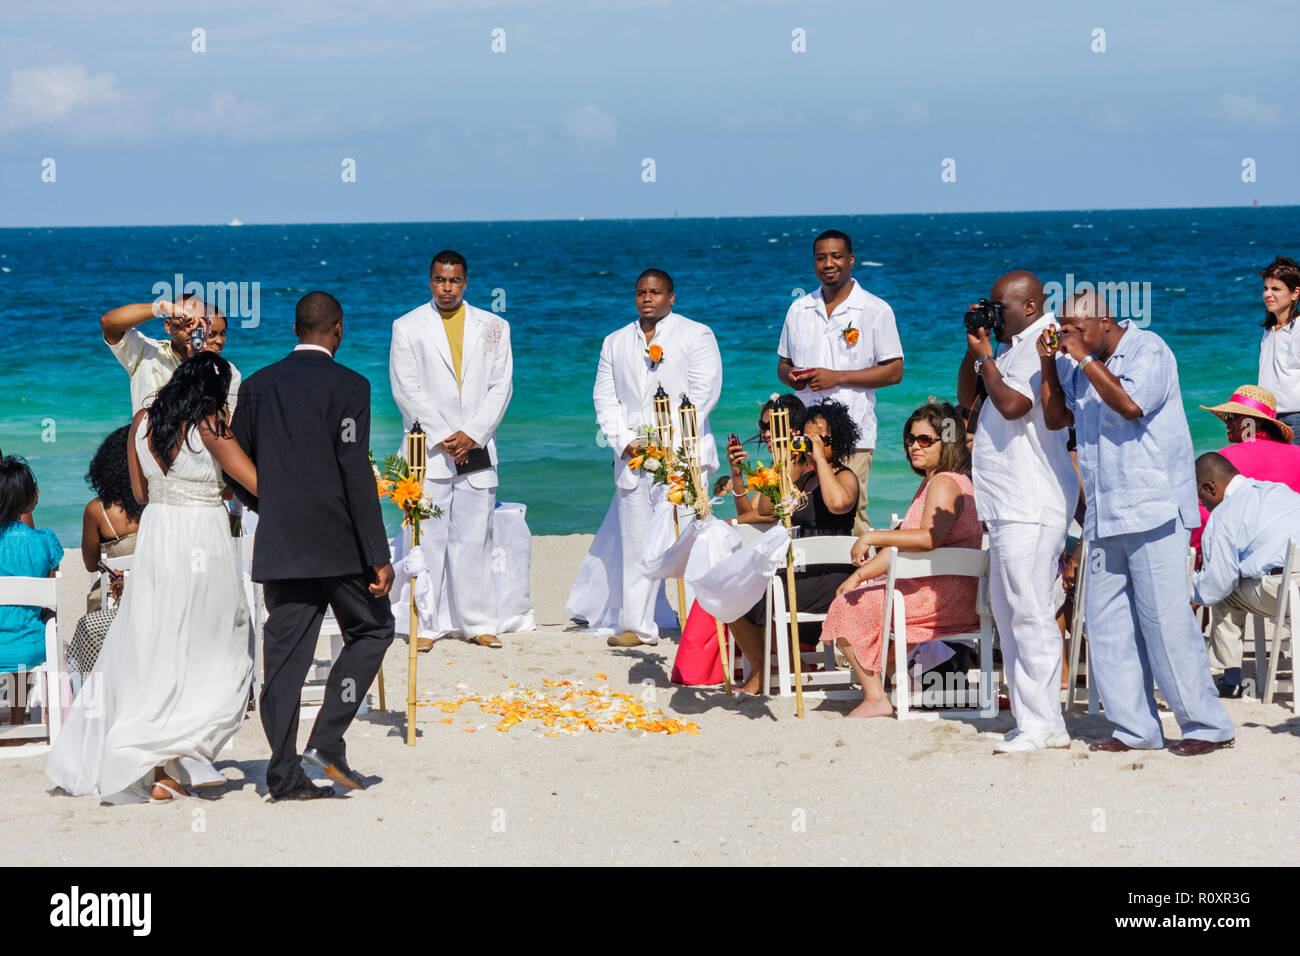 Miami Beach Florida, Atlantischer Ozean, Wasser, öffentlicher Strand, Küste, Destination Hochzeit, Zeremonie, schwarzer Mann Männer männlich, Frau weibliche Frauen, Paar, Gast, Bräutigam, b Stockfoto